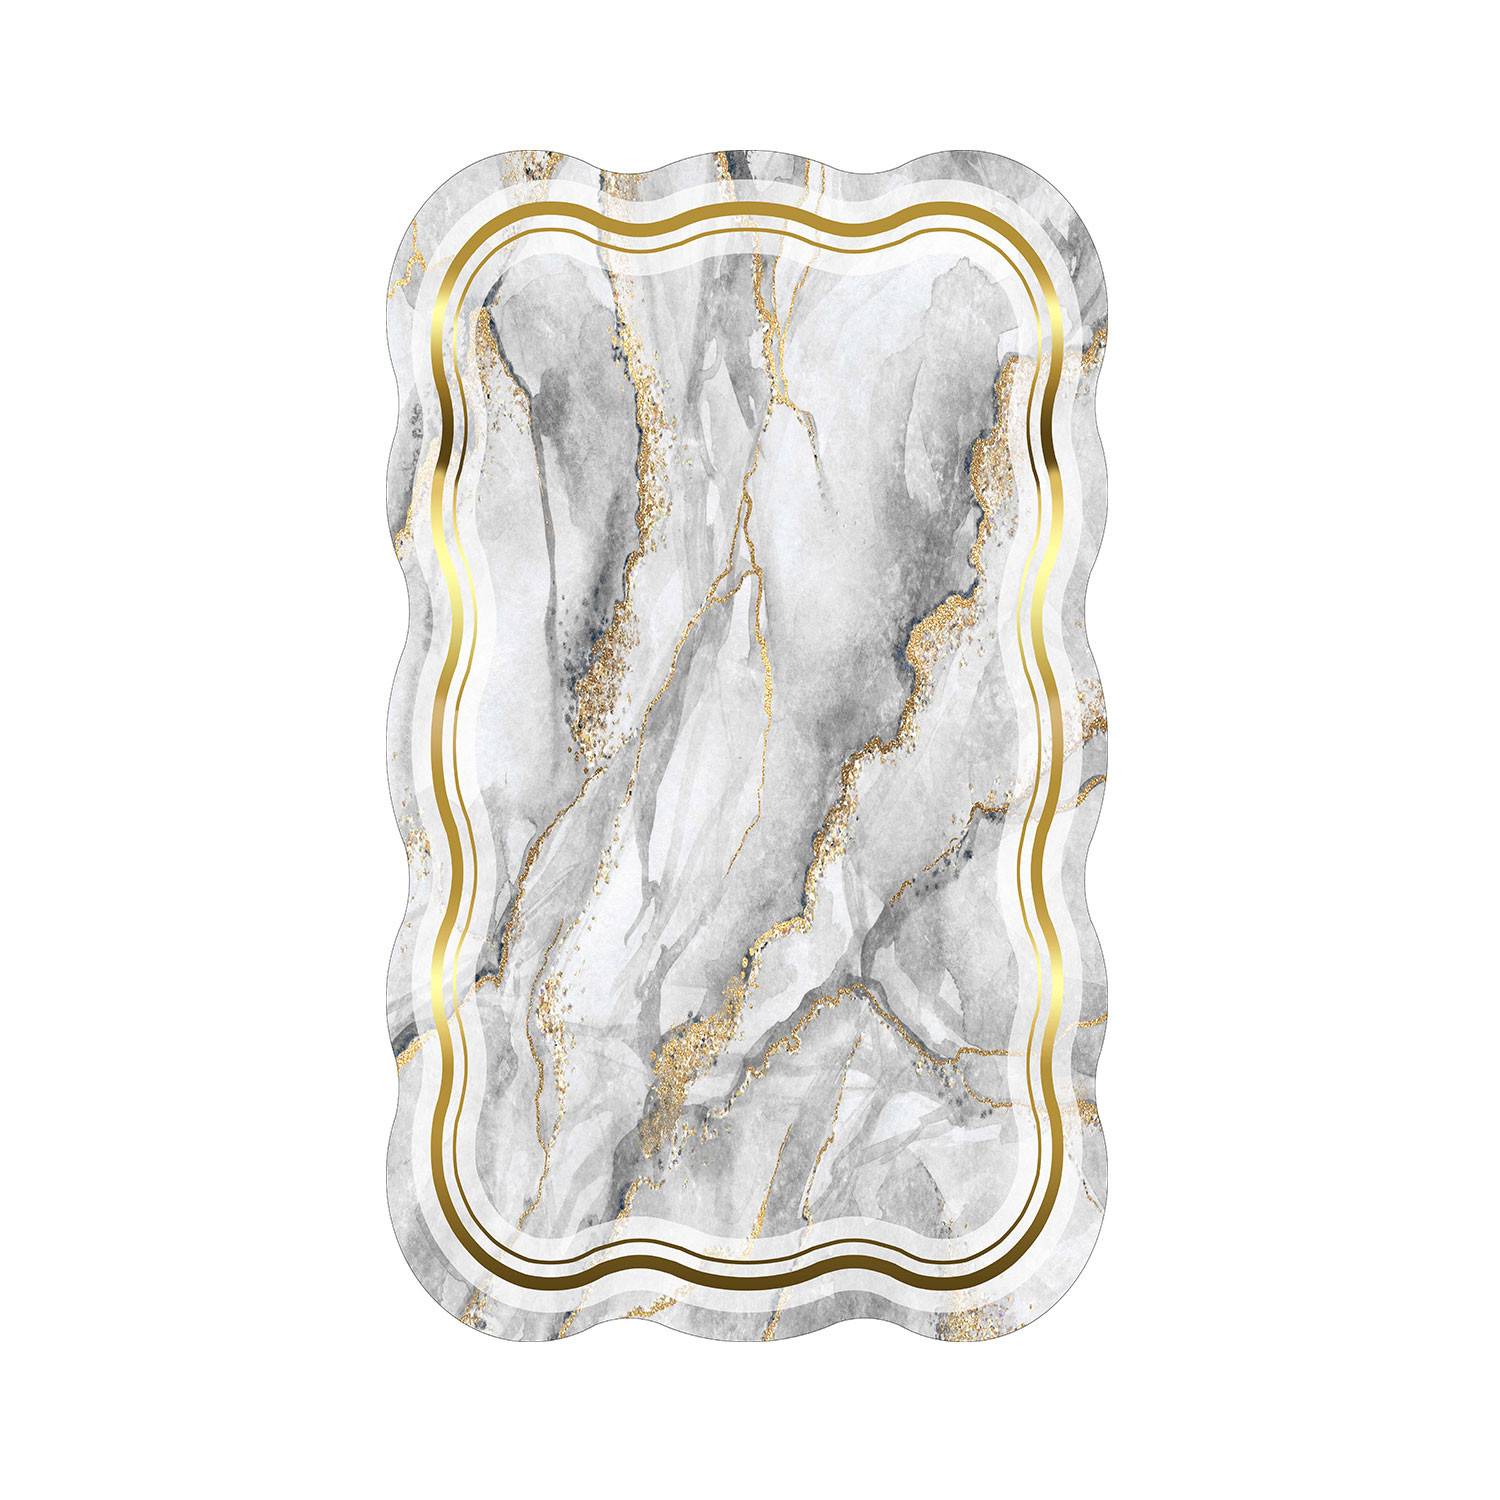 Kiros Vloerkleed 80x150cm Grijs en wit patroon Marmer effect en gouden draden